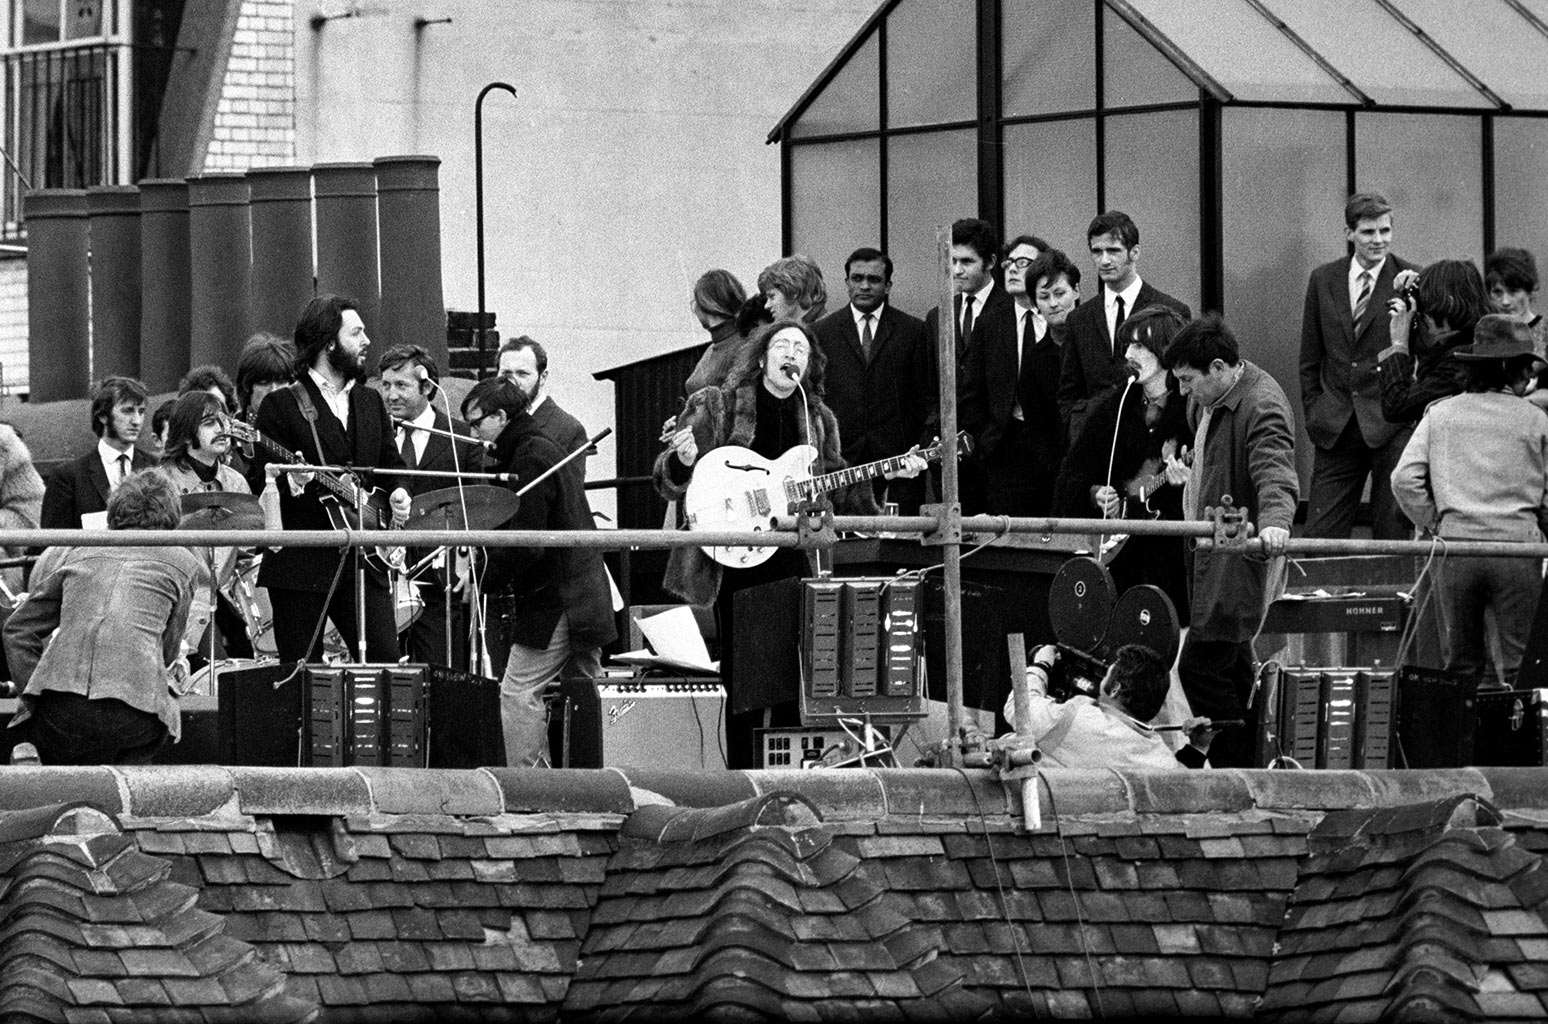 Beatles Rooftop Concert 1969 Billboard 1548 